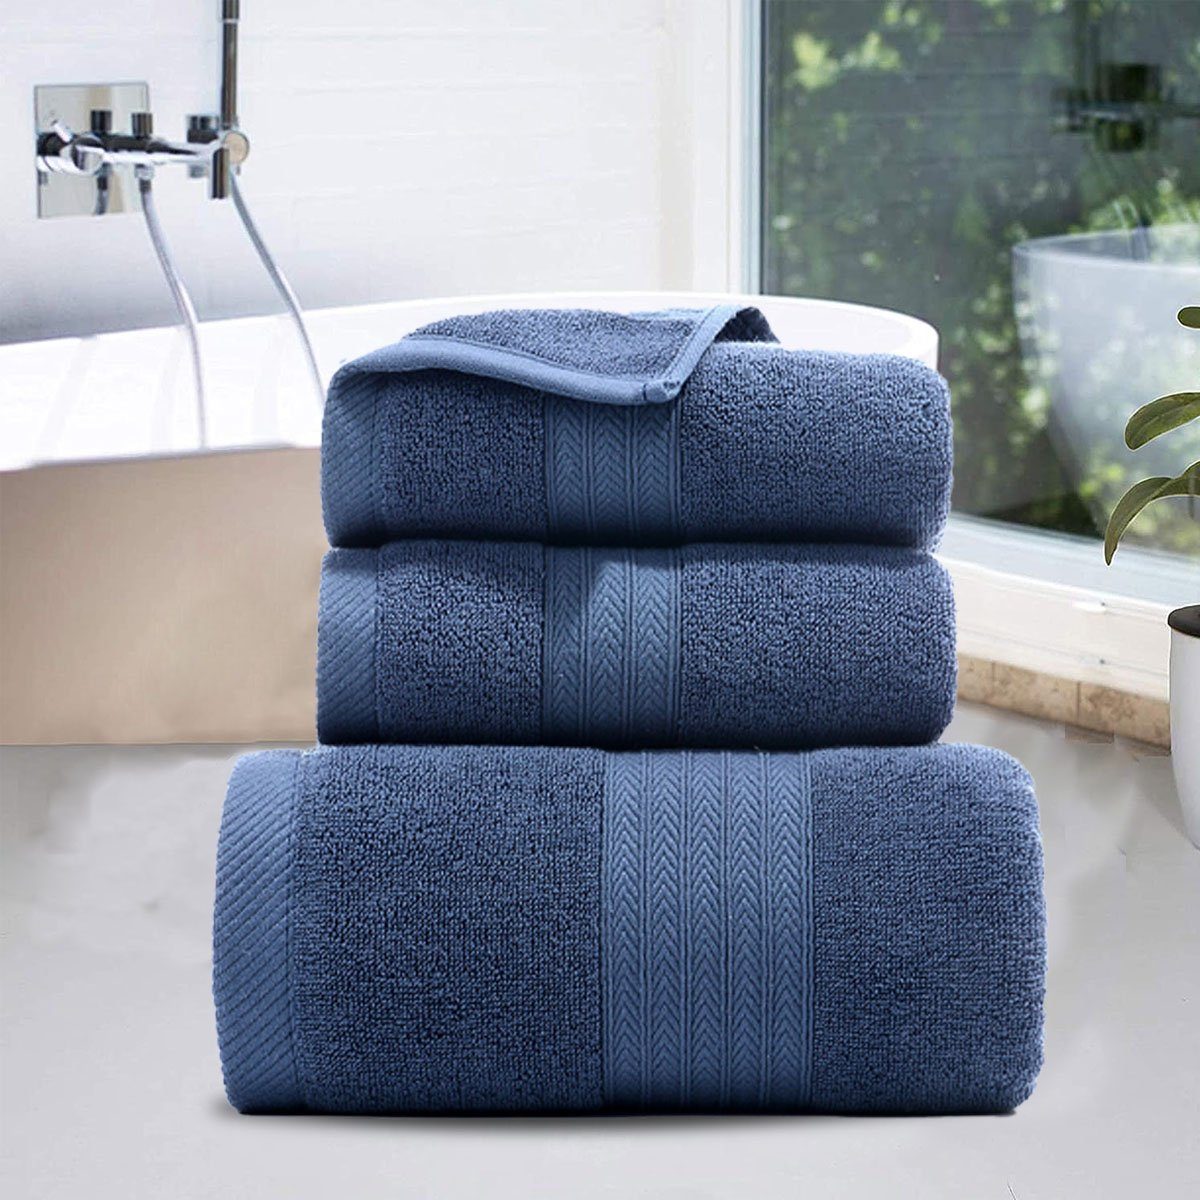 weich,für Hause Set zu Handtücher und Jormftte Handtuch Blau Set-2xHandtuch,1xBadetuch,saugfähig